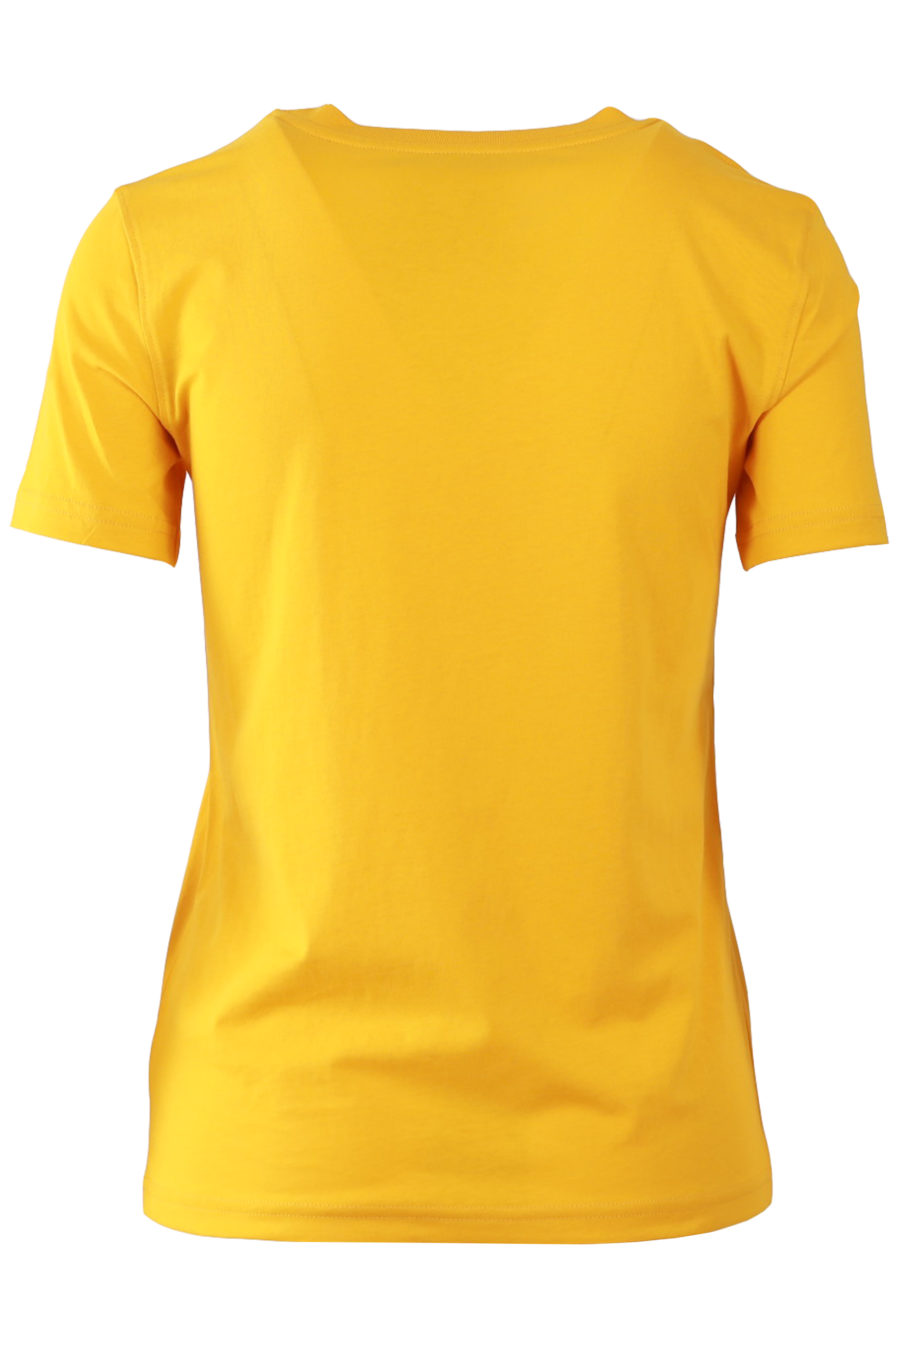 Orange T-shirt with black logo - 8253b31ebeb851a6858858ed9619311972fcaf0c69e